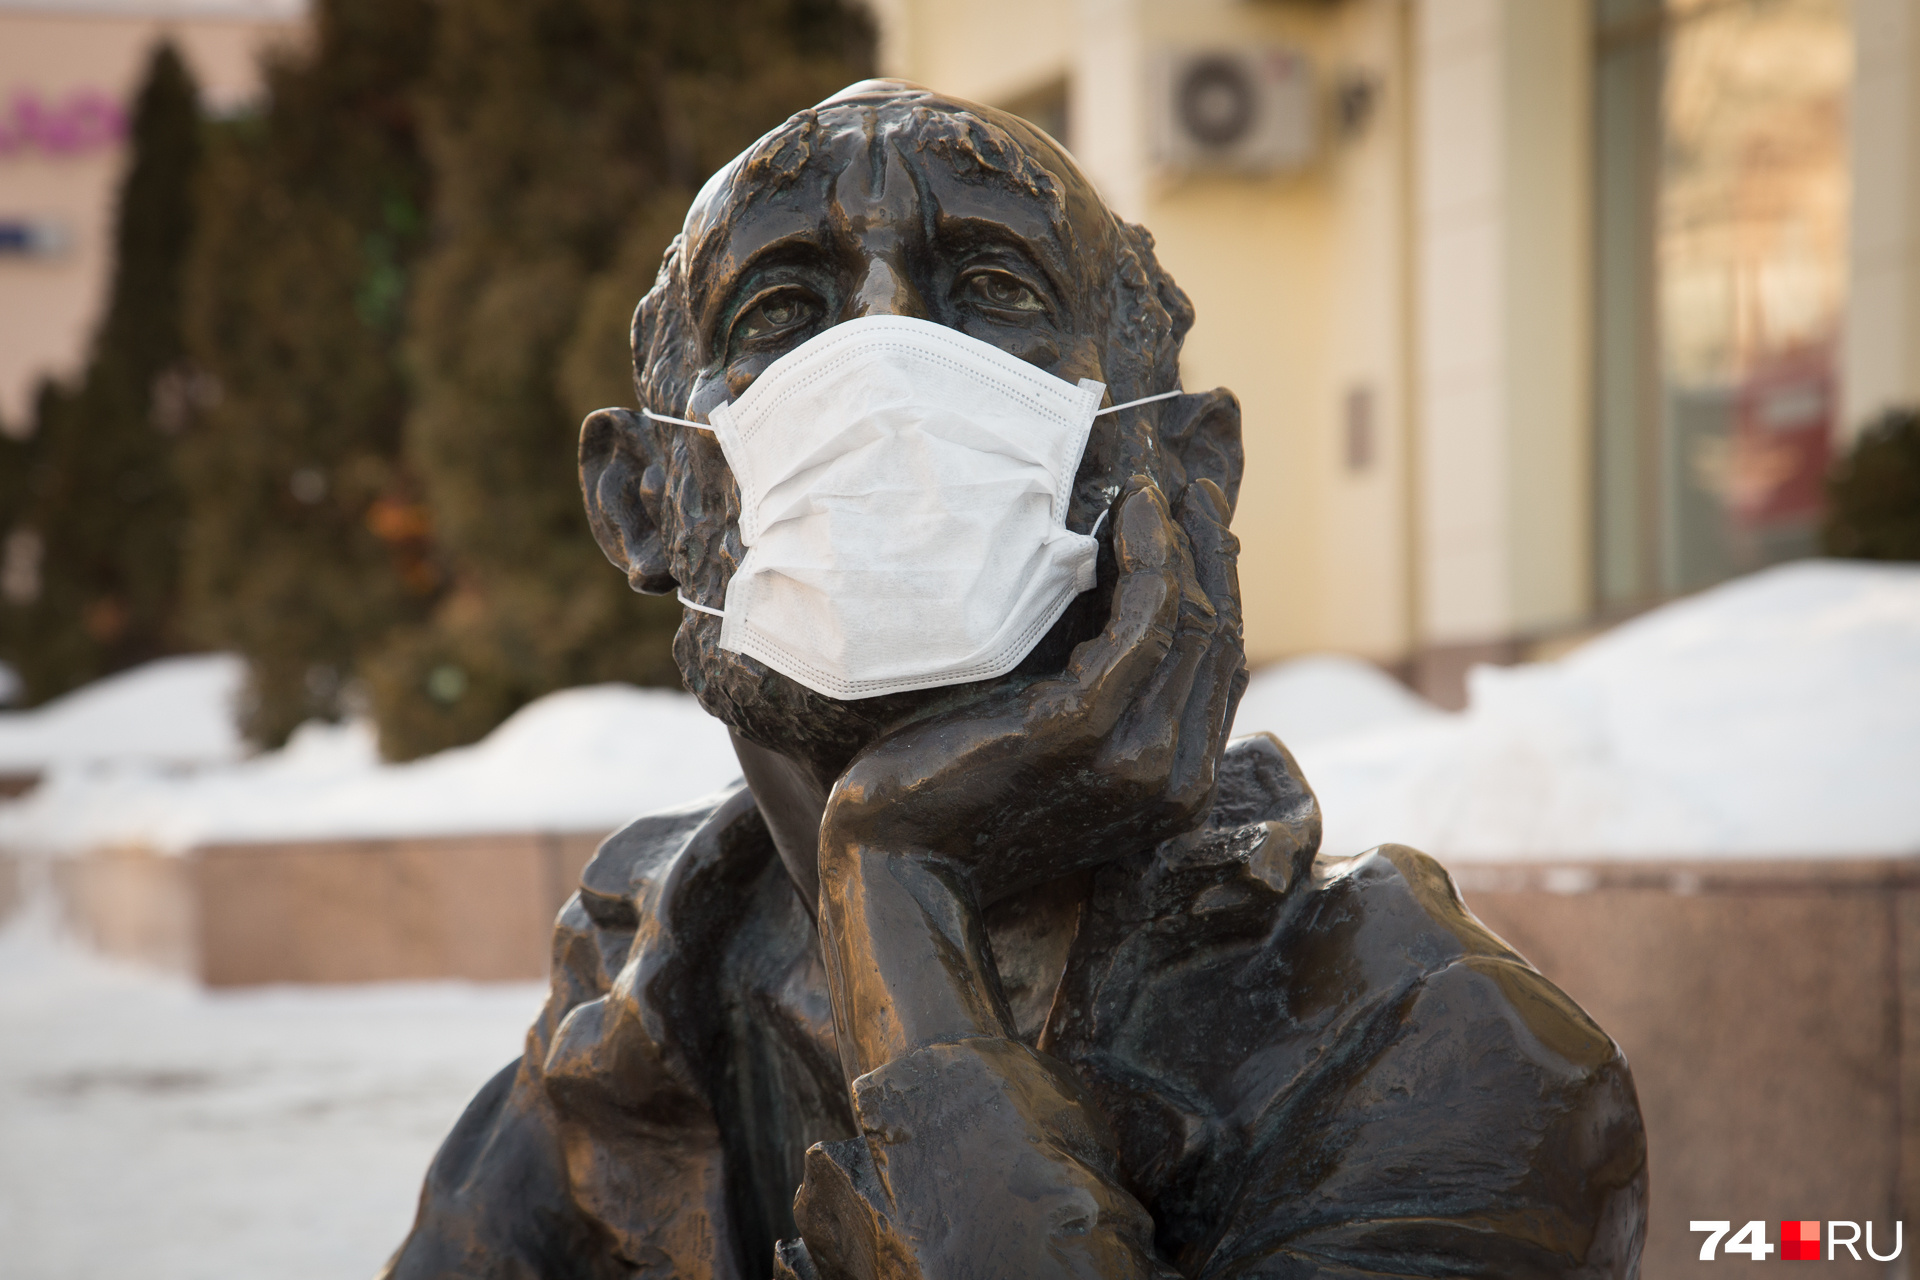 Скульптура из масок медицинских. Будет ли маска 17.03